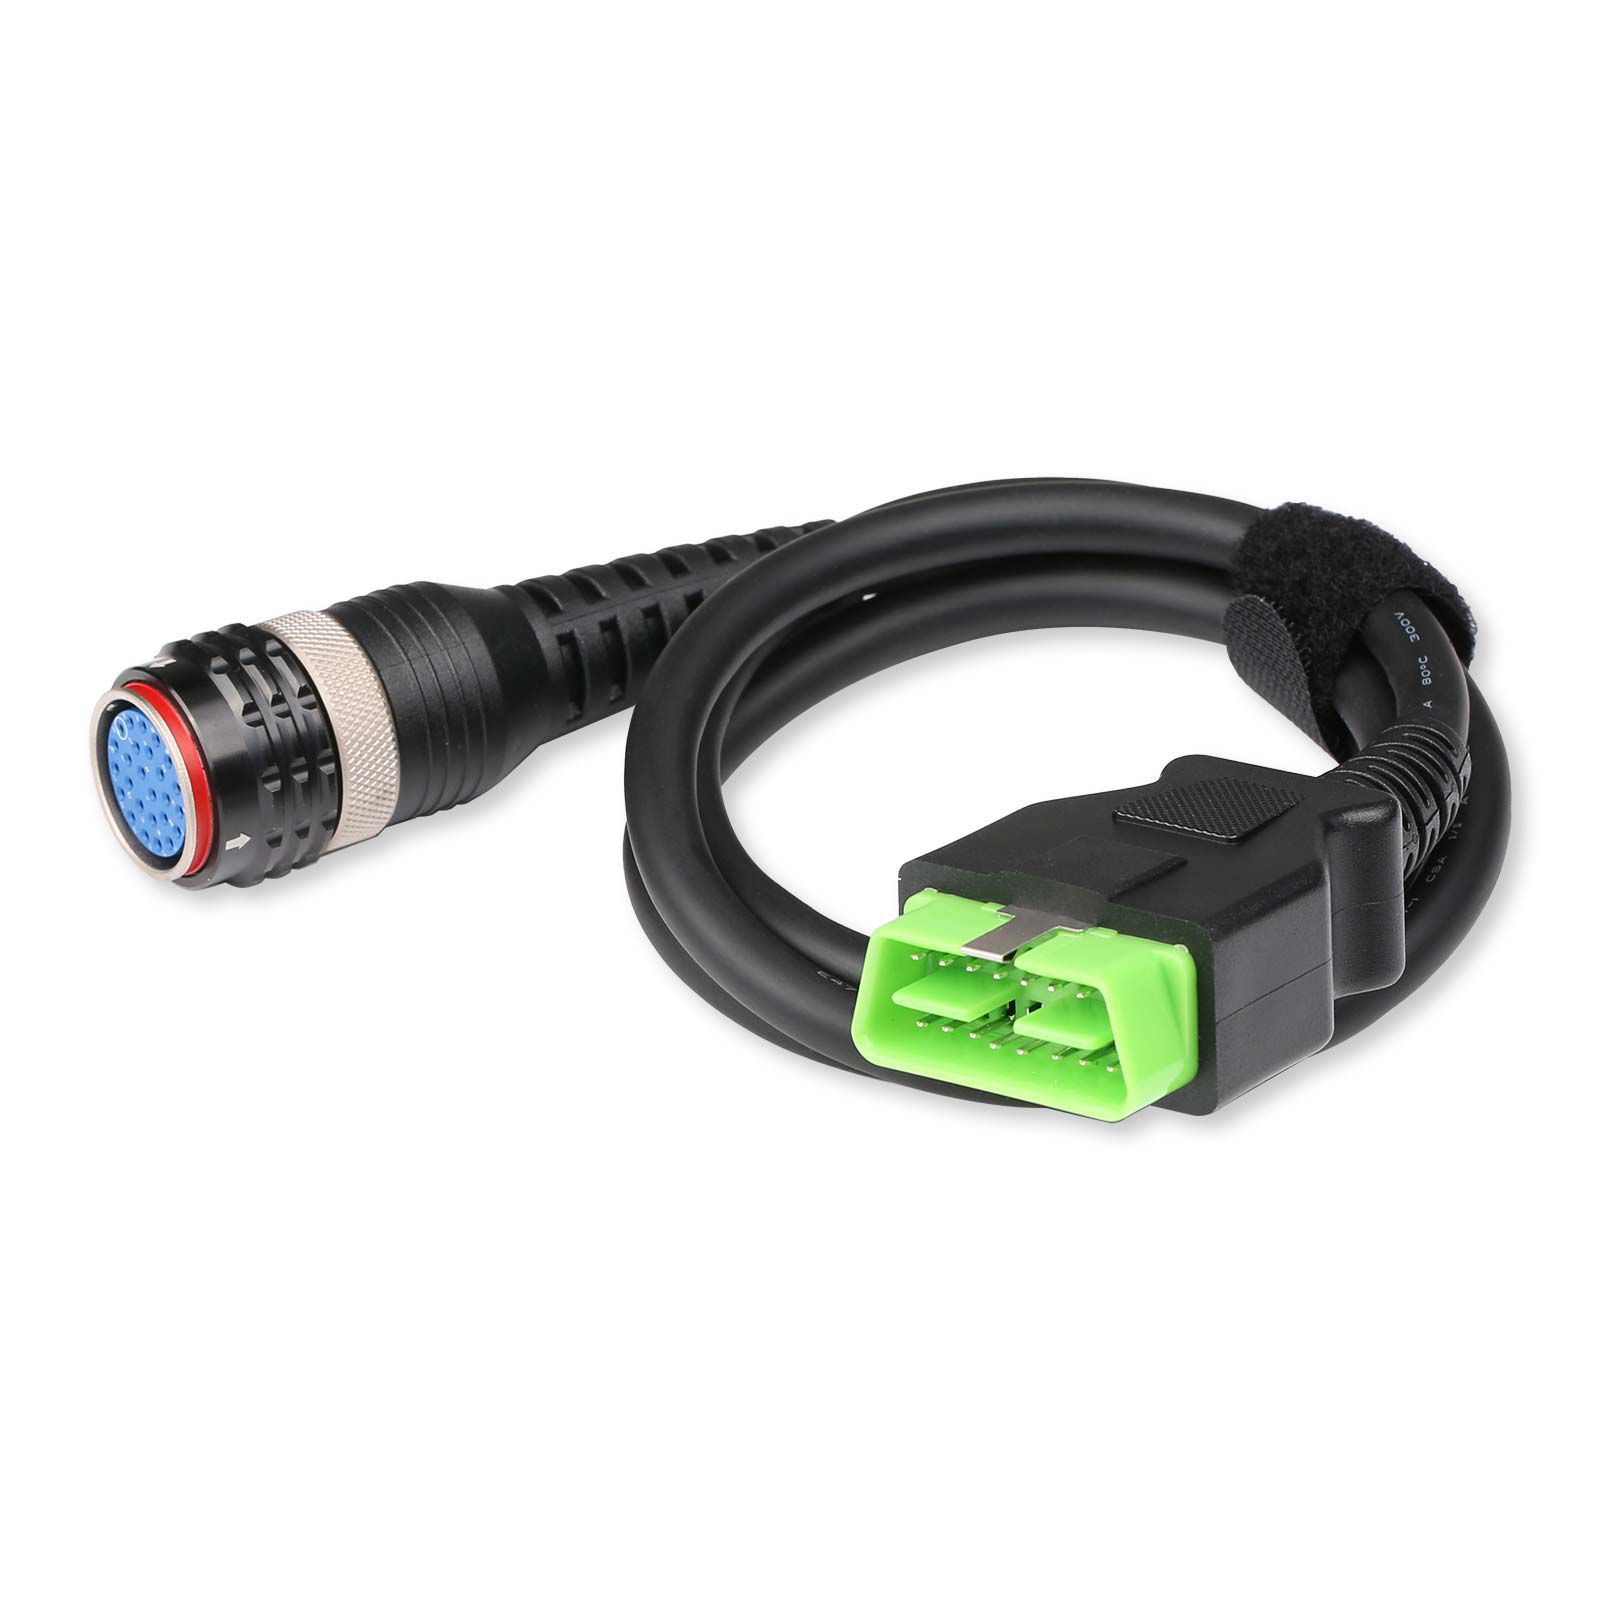  OBD2 Kabel für Volvo 88890304 Vocom Green Version